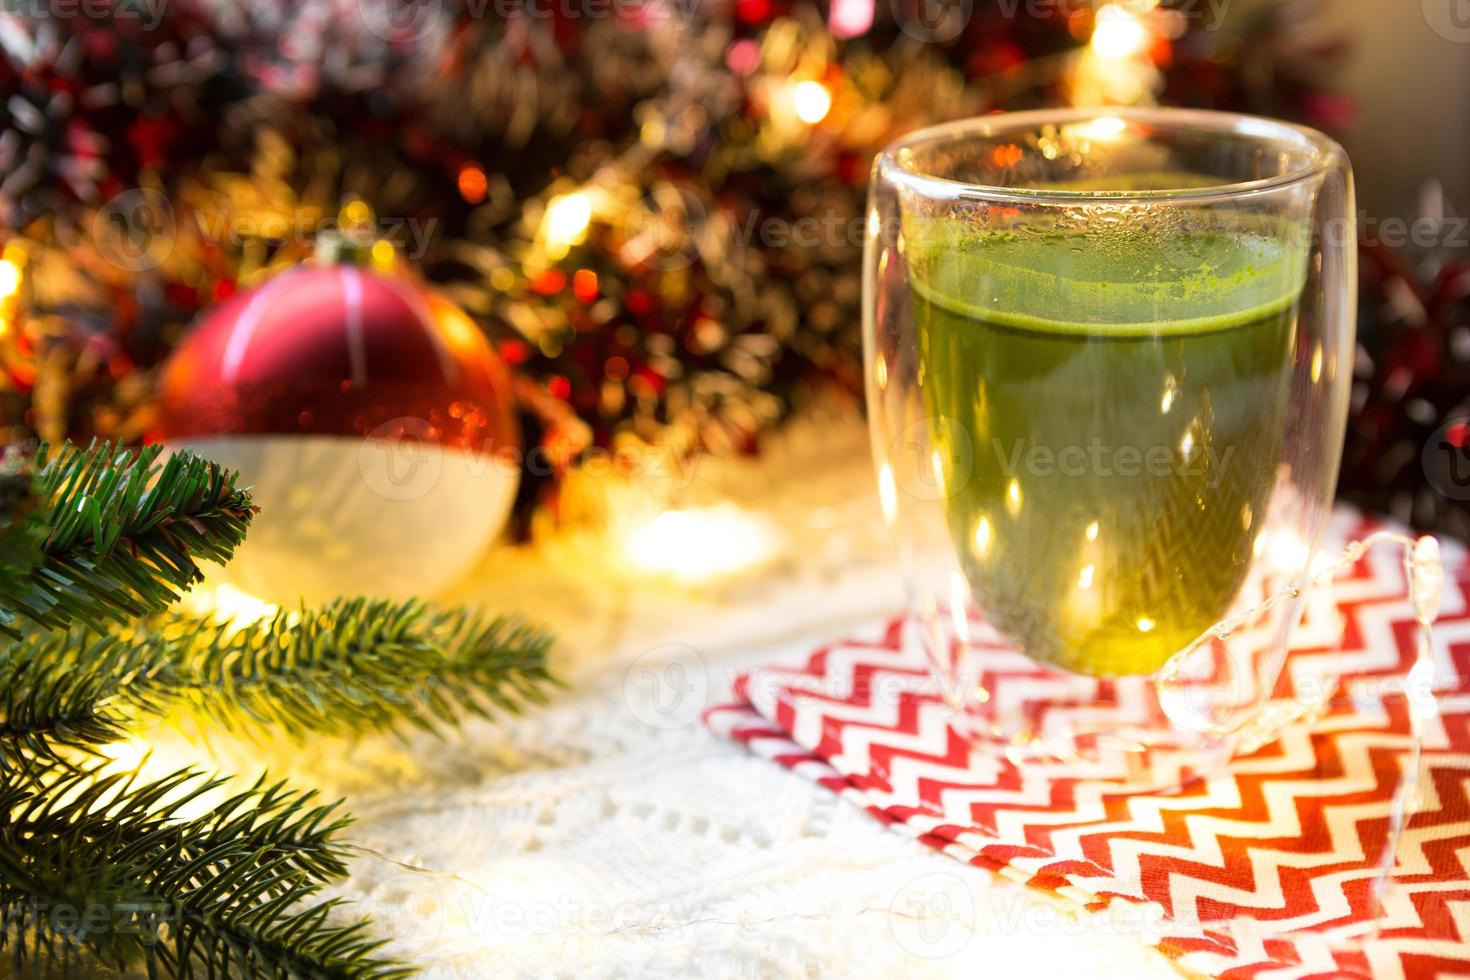 copo de vidro transparente de parede dupla com chá matcha japonês na mesa com decoração de natal. atmosfera de ano novo, guirlanda e enfeites, ramo de abeto, aconchegante, cobertor de malha, bola, guardanapo listrado foto